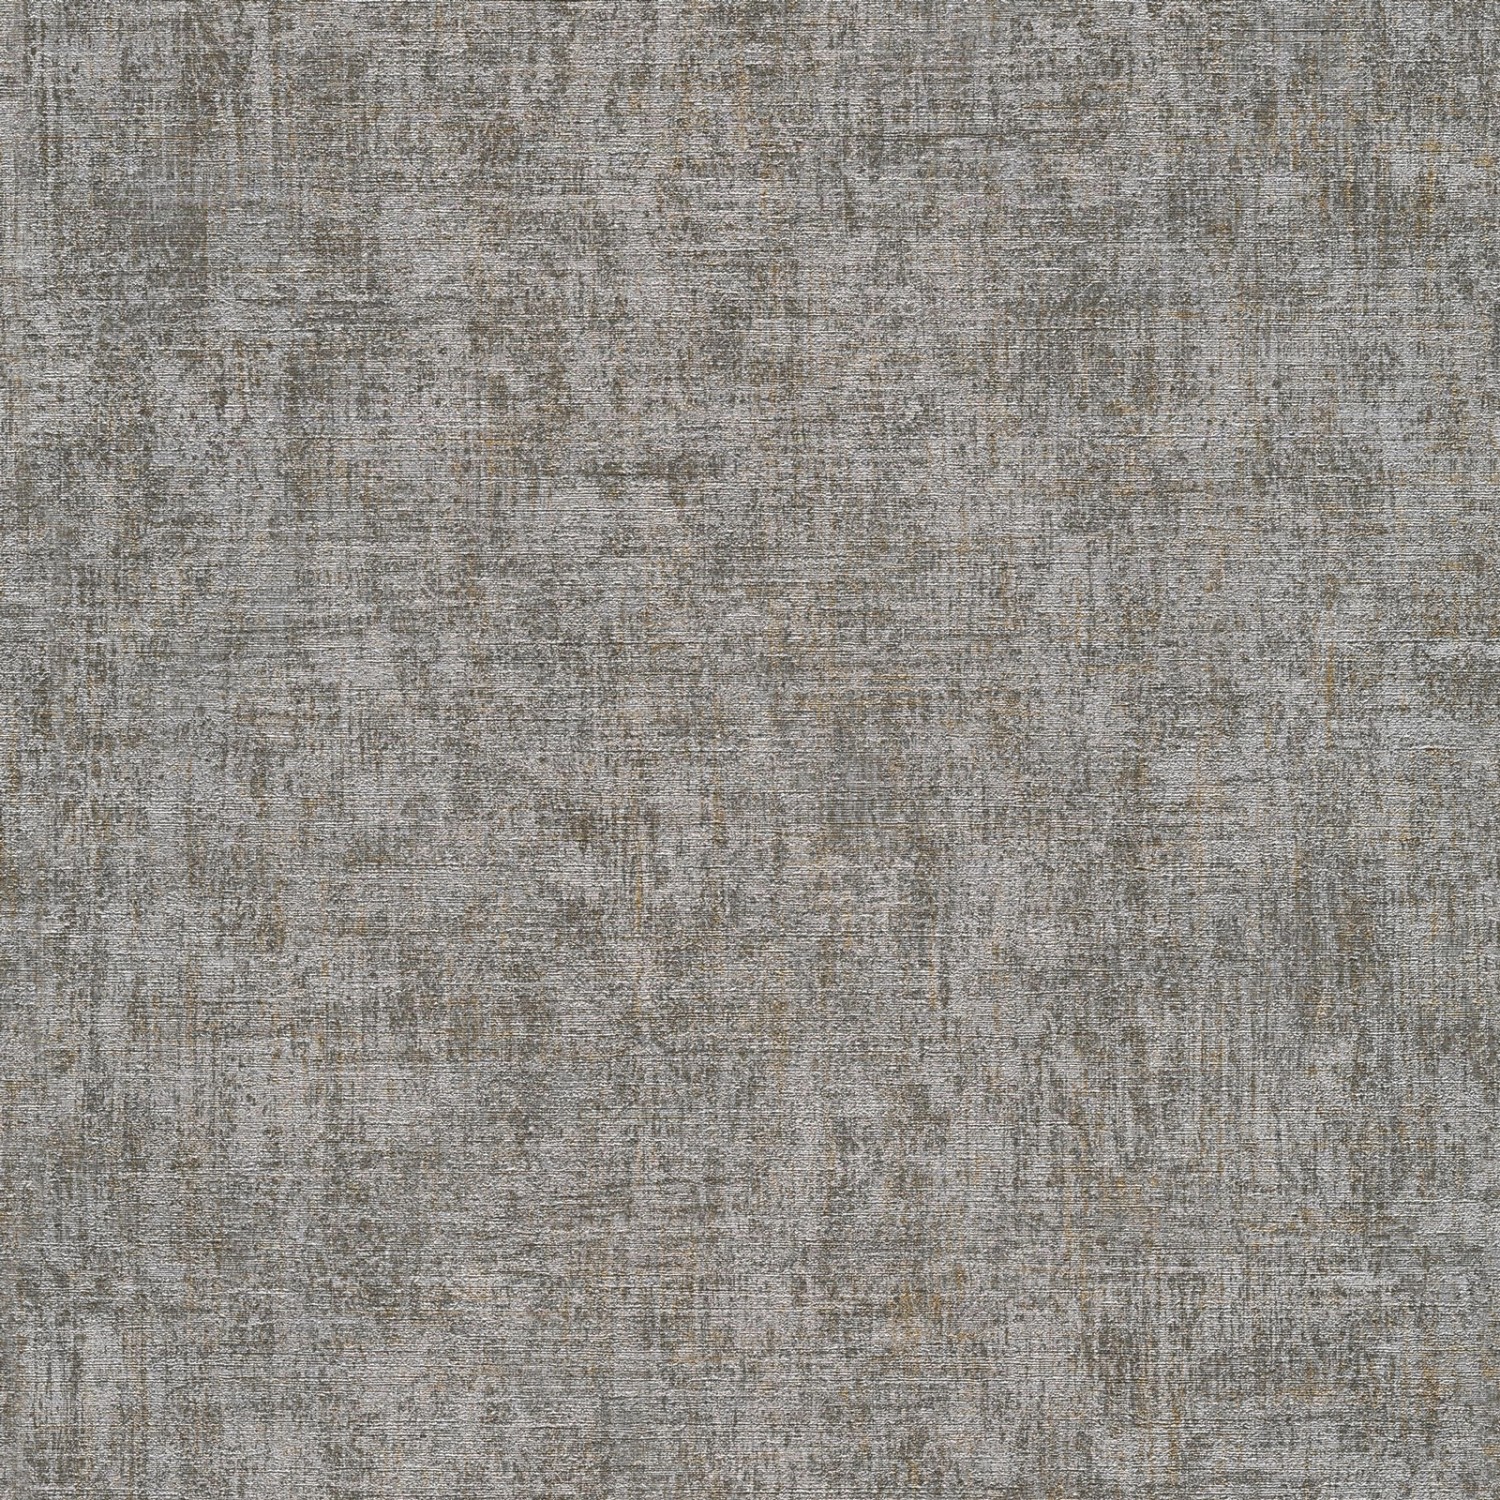 Bricoflor Textiloptik Tapete in Dunkelgrau Wohnzimmer und Schlafzimmer Vliestapete in Leinenoptik Einfarbige Graue Wandt